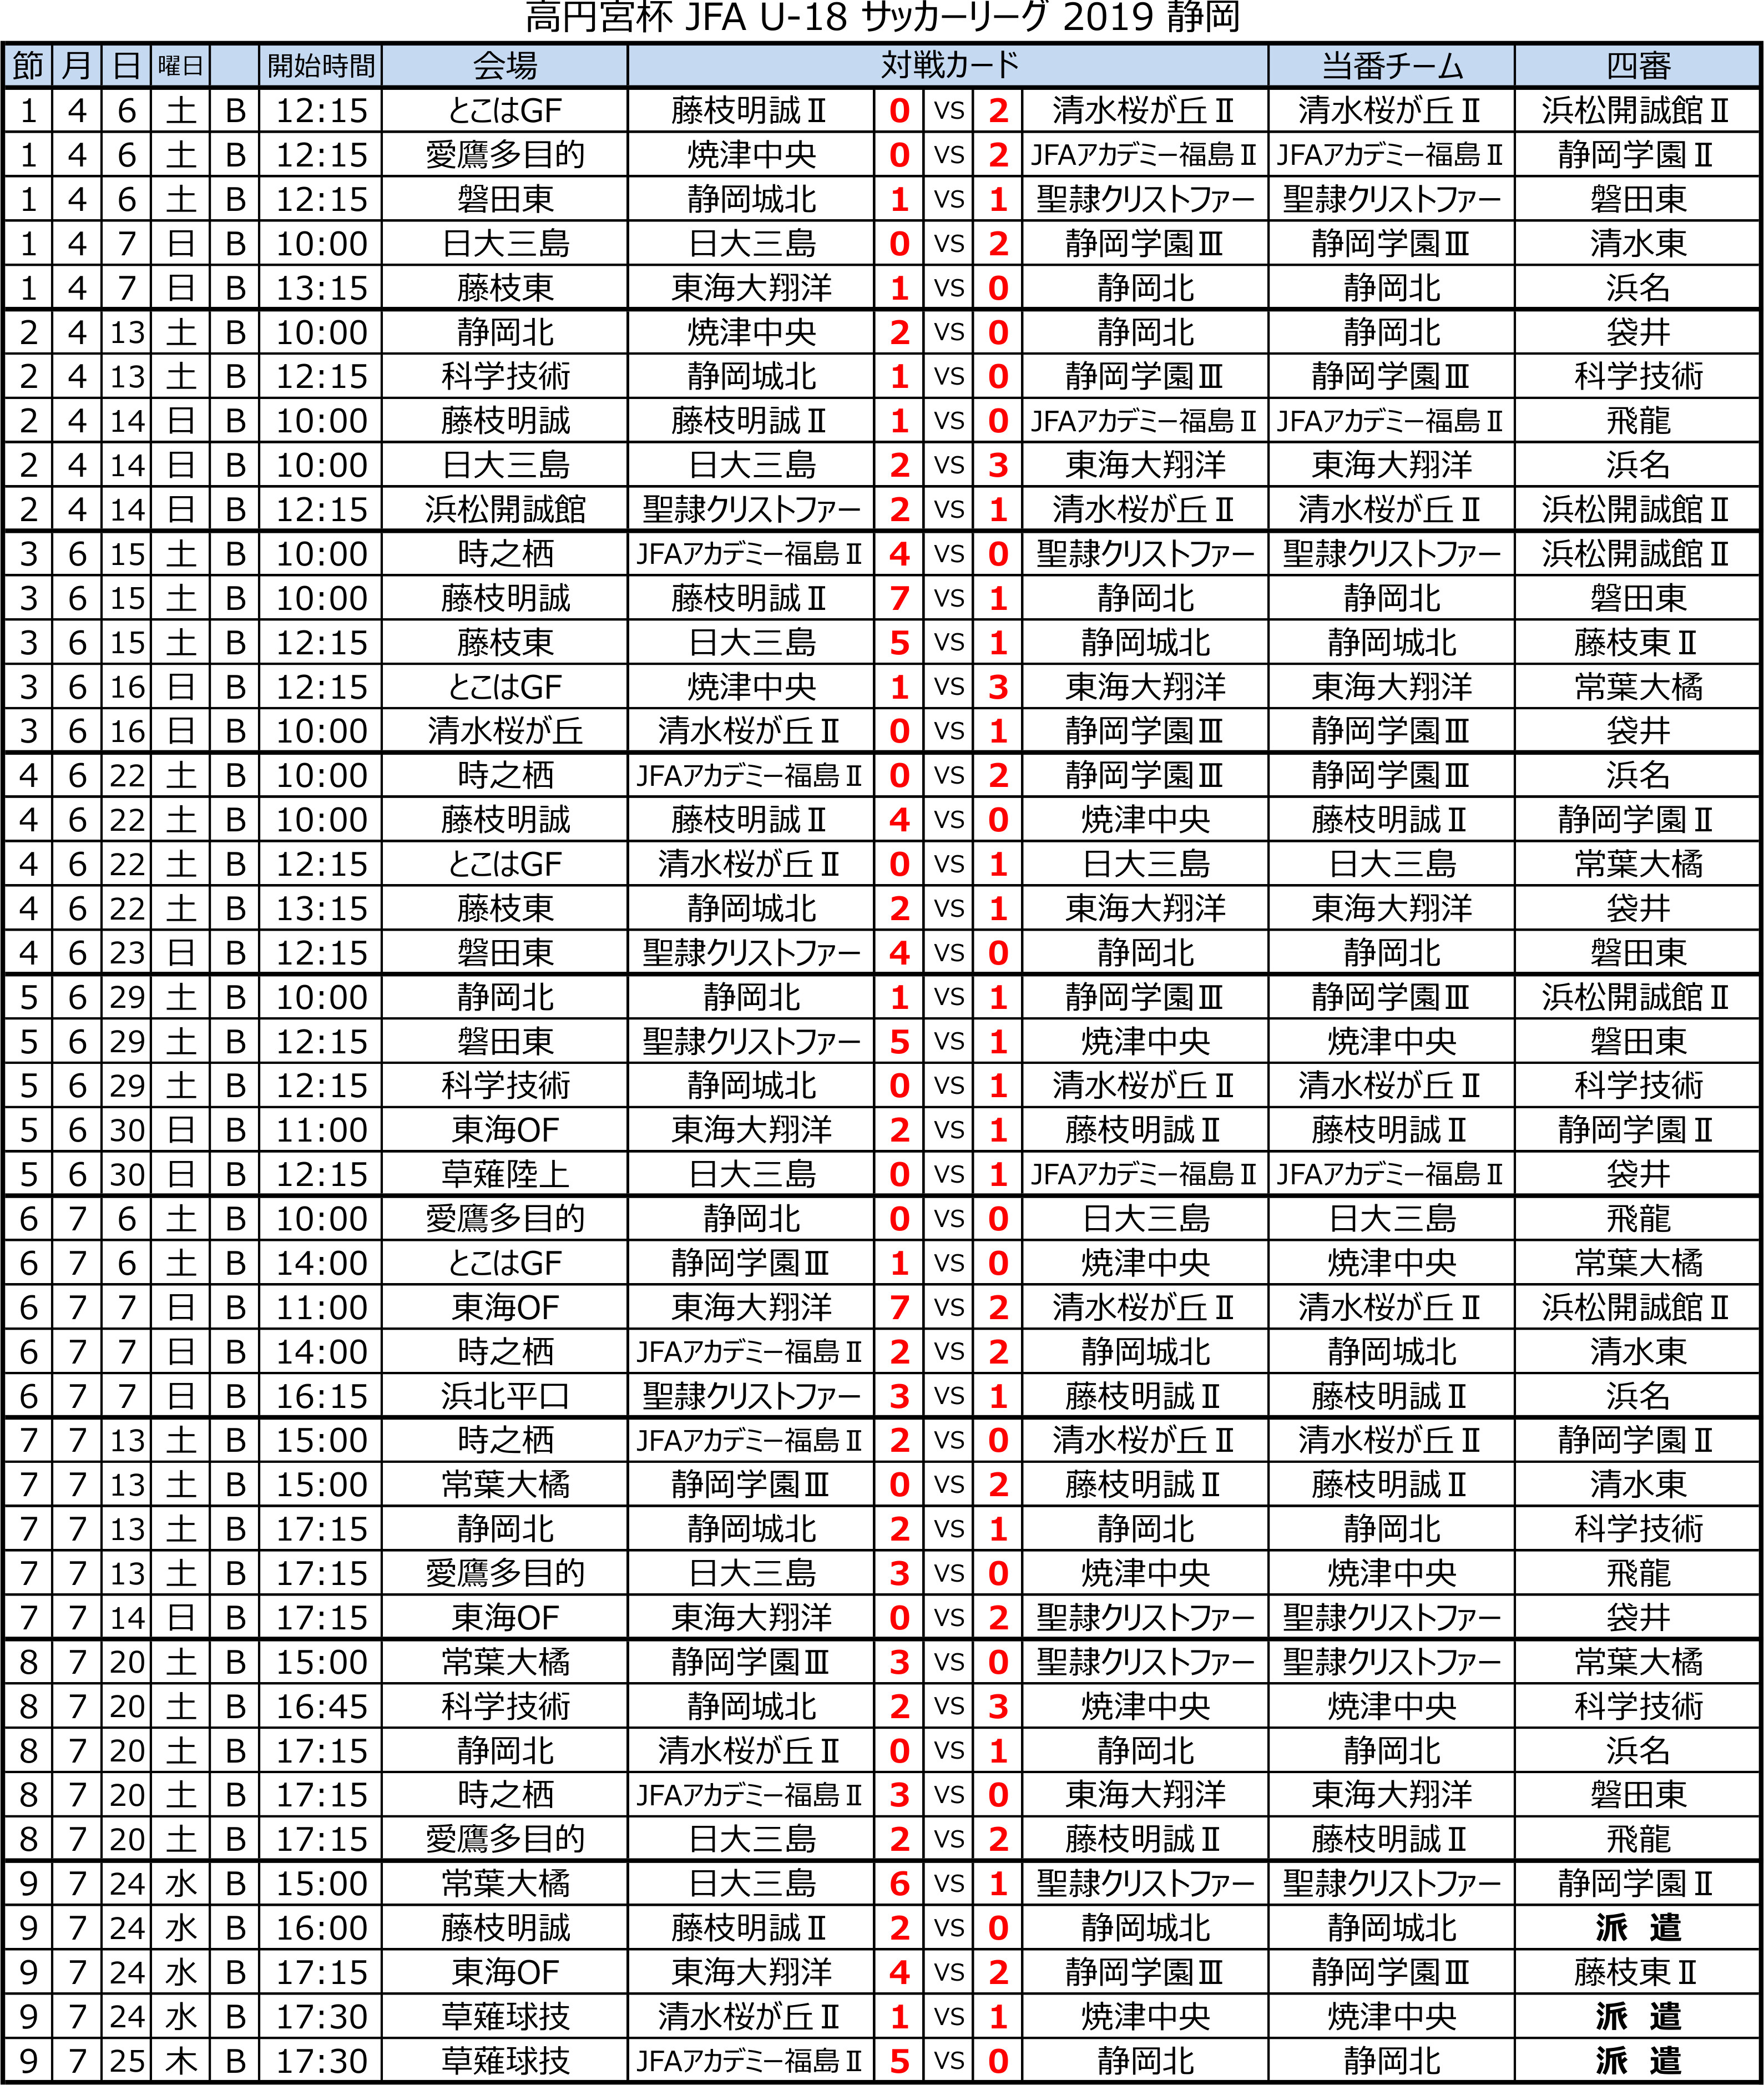 高円宮杯 JFA U-18サッカーリーグ2019 静岡 　Bリーグ前期　 トーナメント表